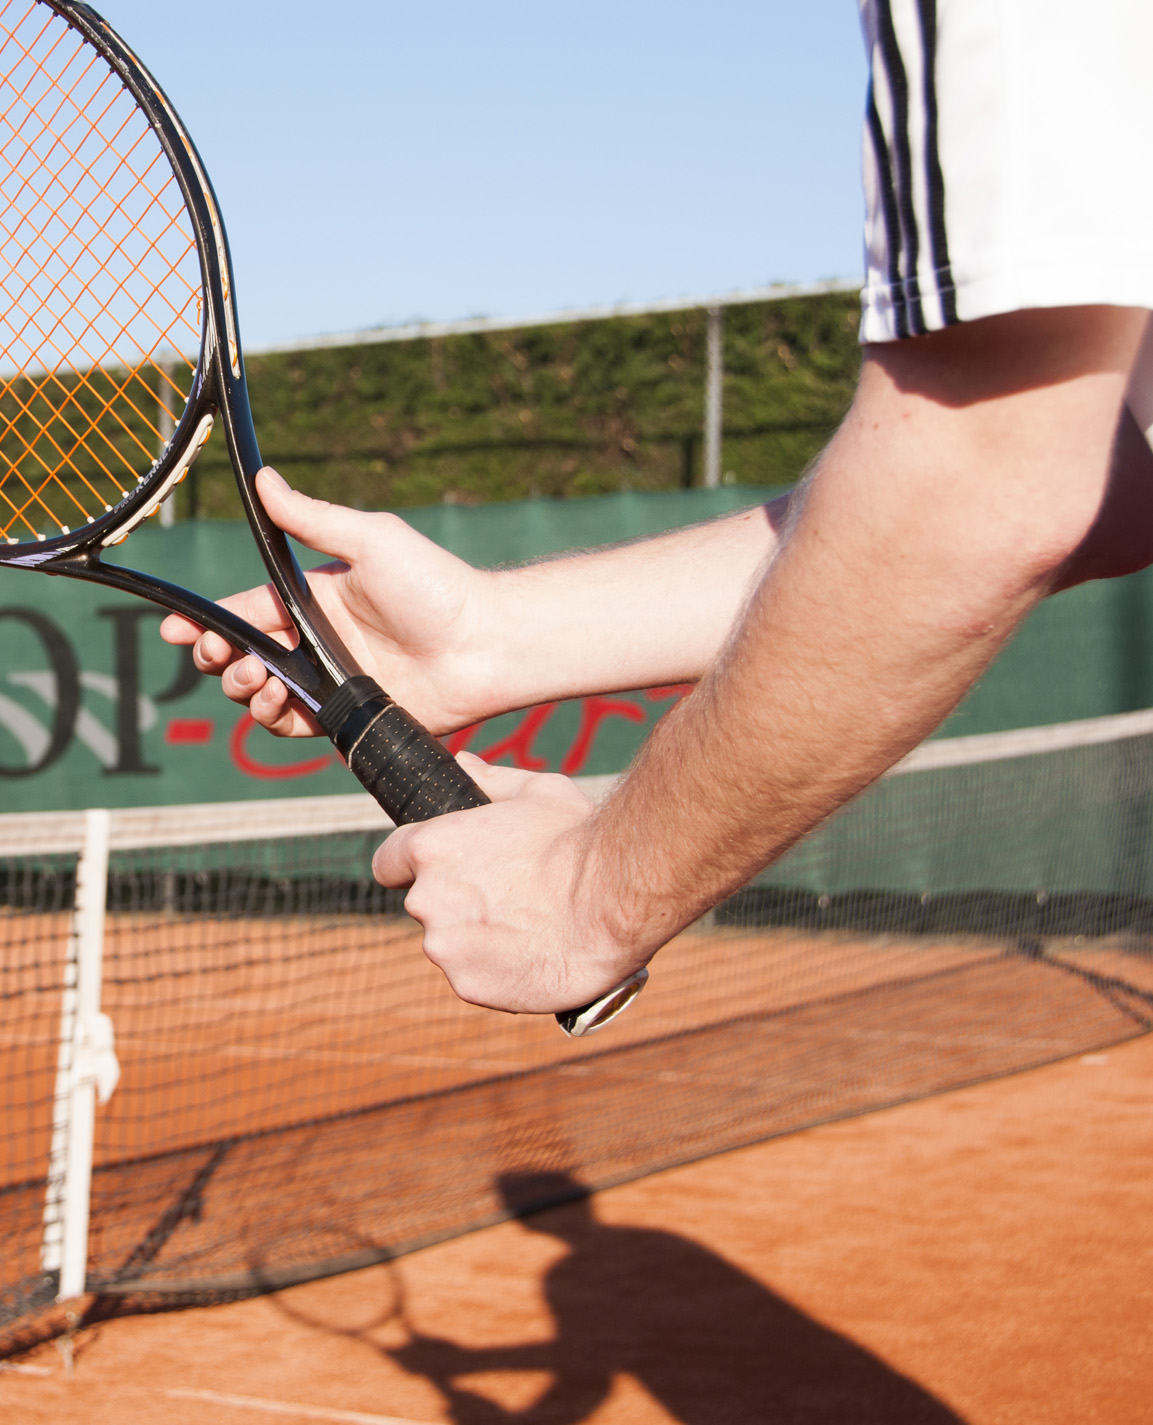 Twee handen die tennisracket vasthouden